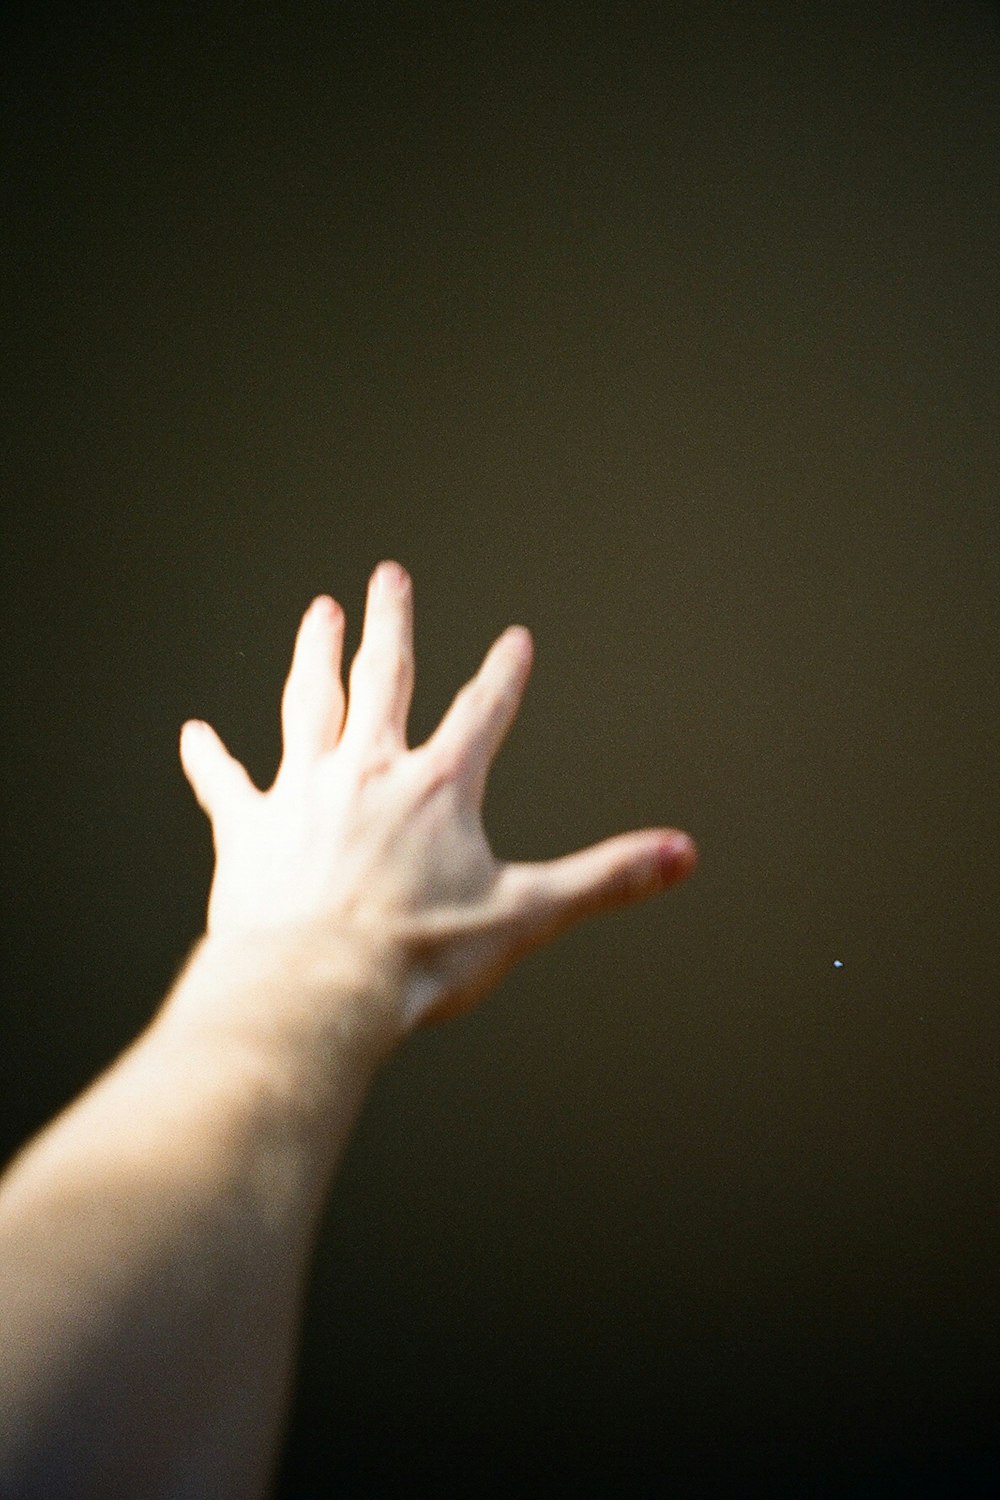 la main d’une personne qui se lève pour attraper un frisbee